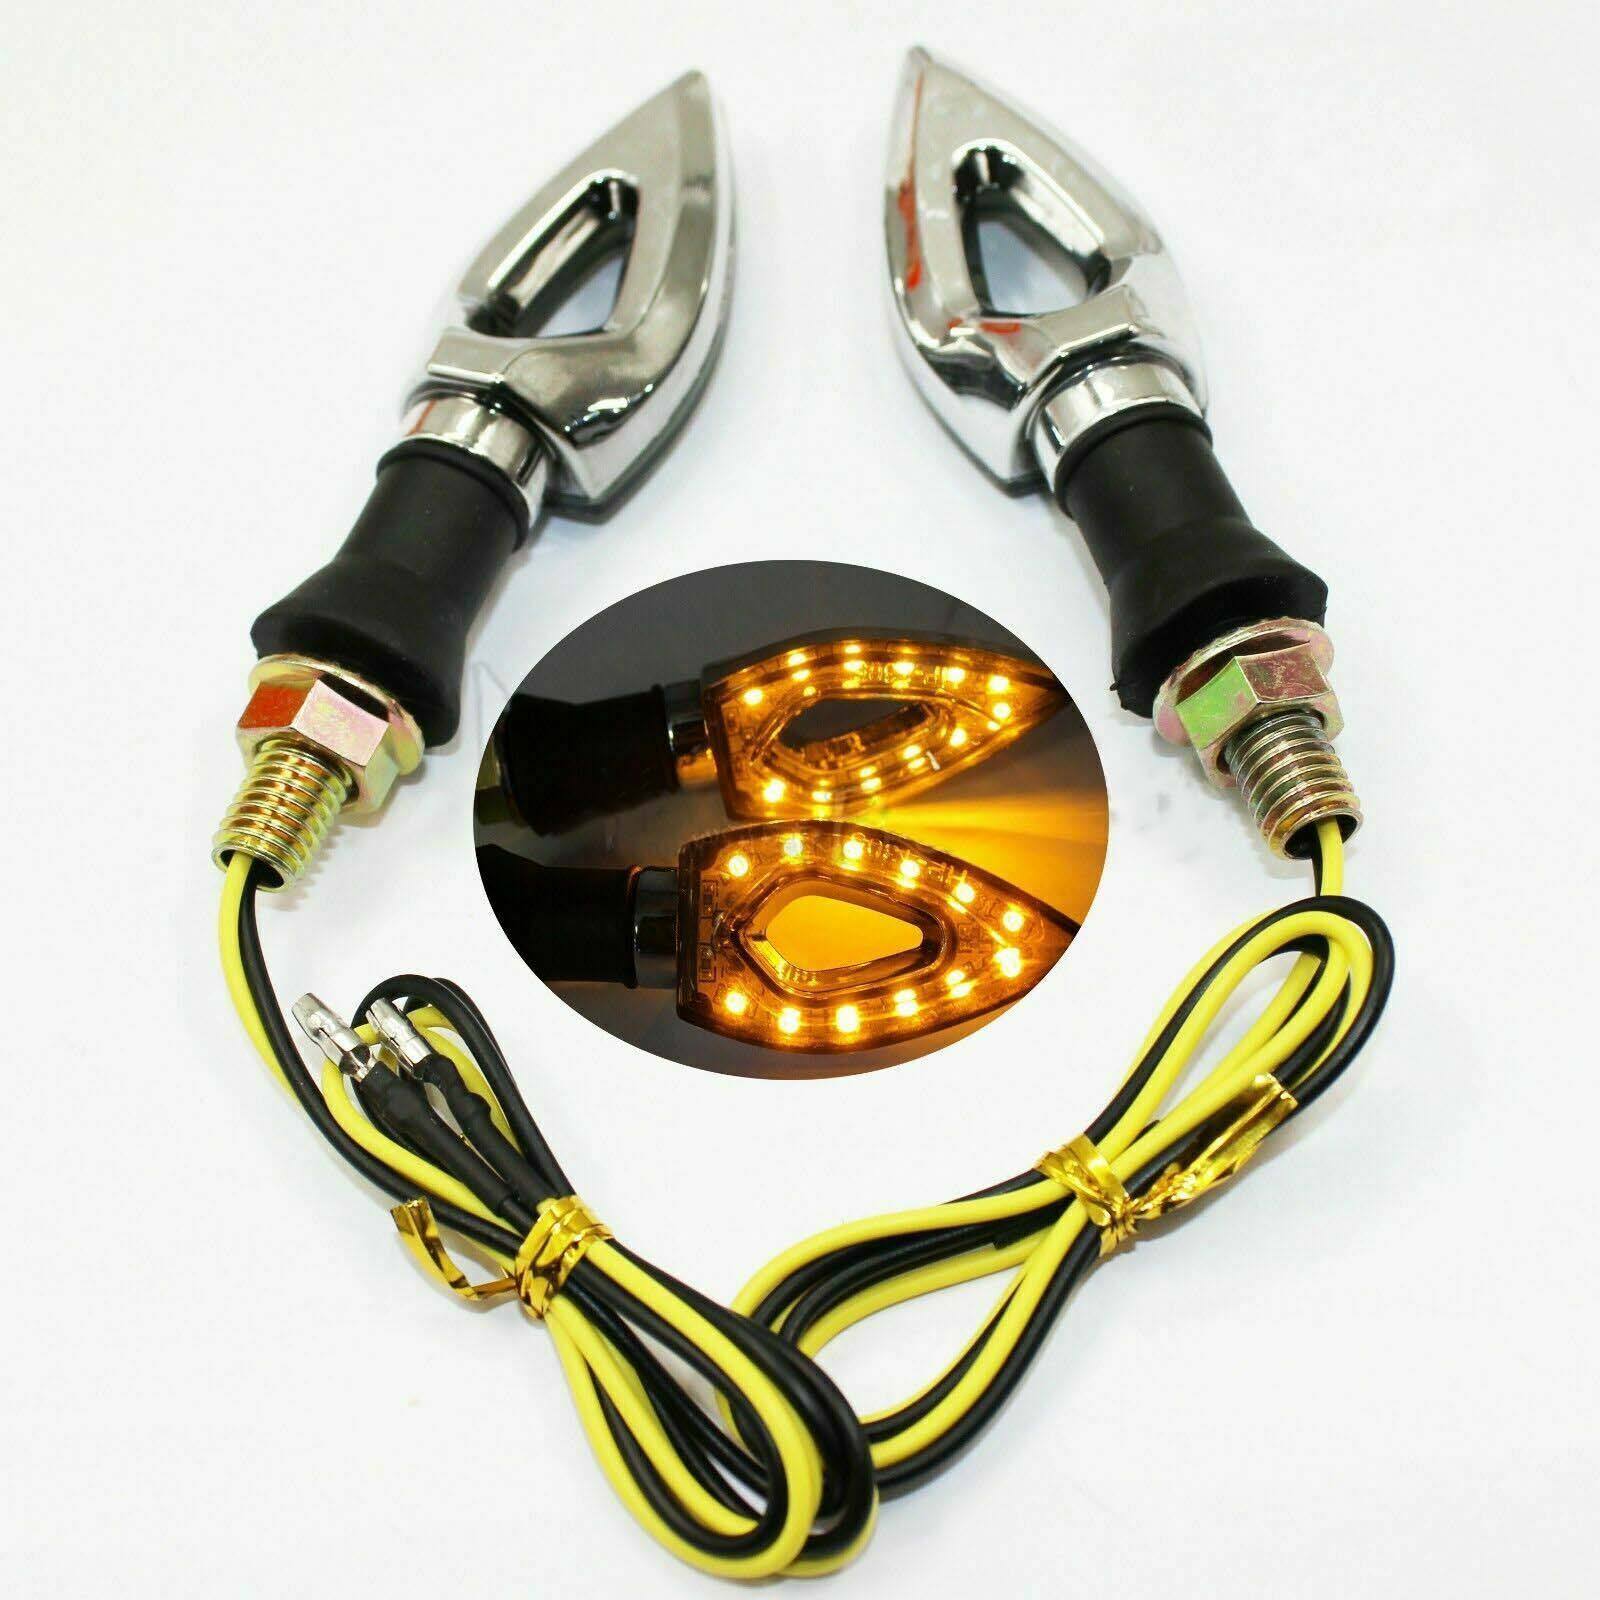 4x Mini LED Indicators Motorcycle Motorbike LED Blinkers For Yamaha Honda Suzuki - TDRMOTO